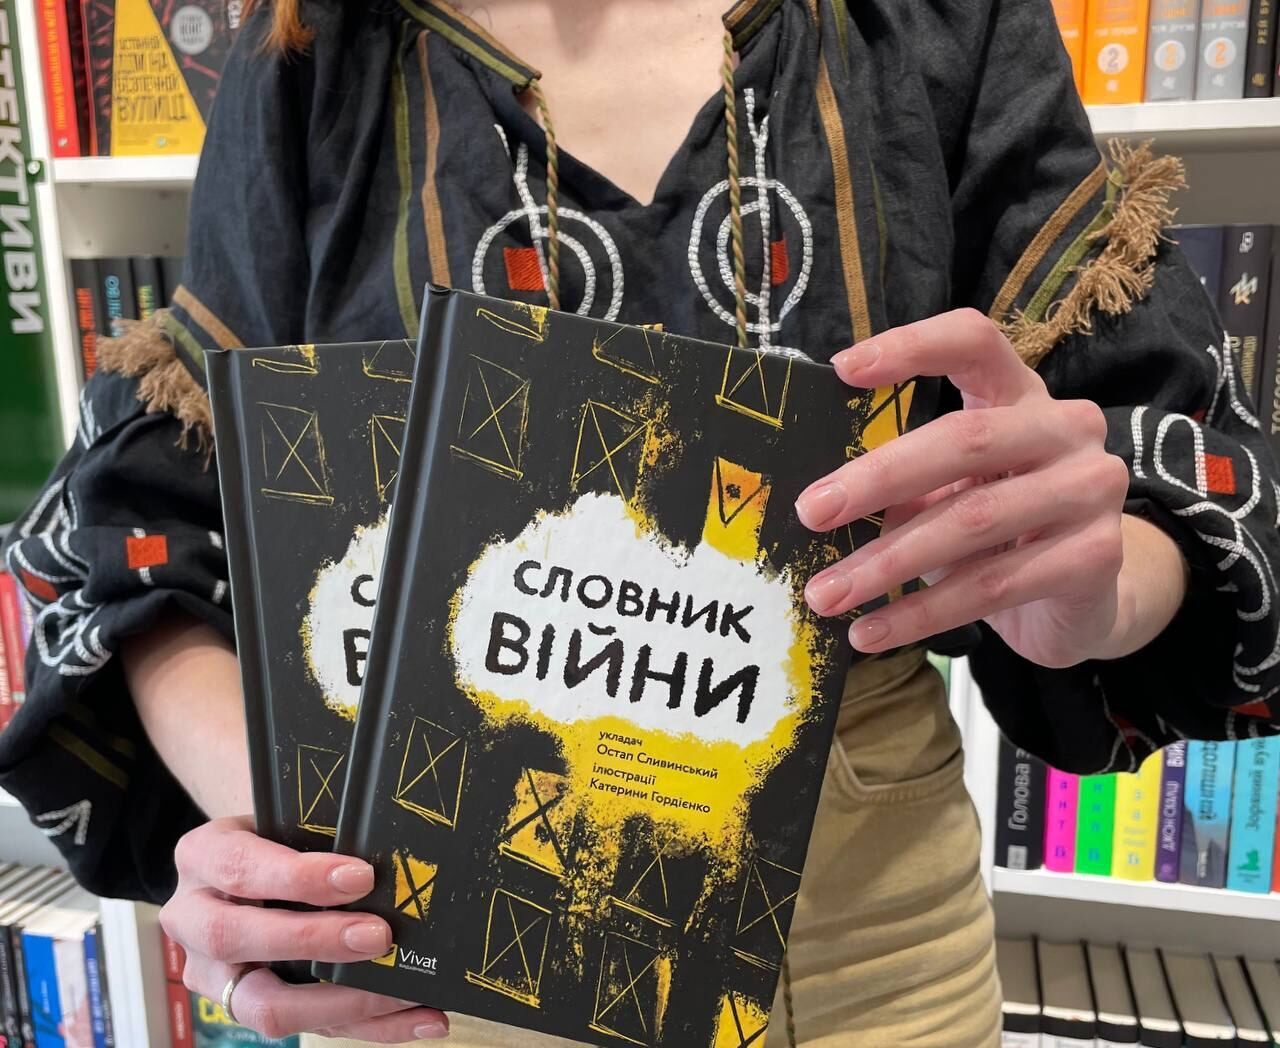 "Словарь войны": книга о каждом украинце и для каждого украинца